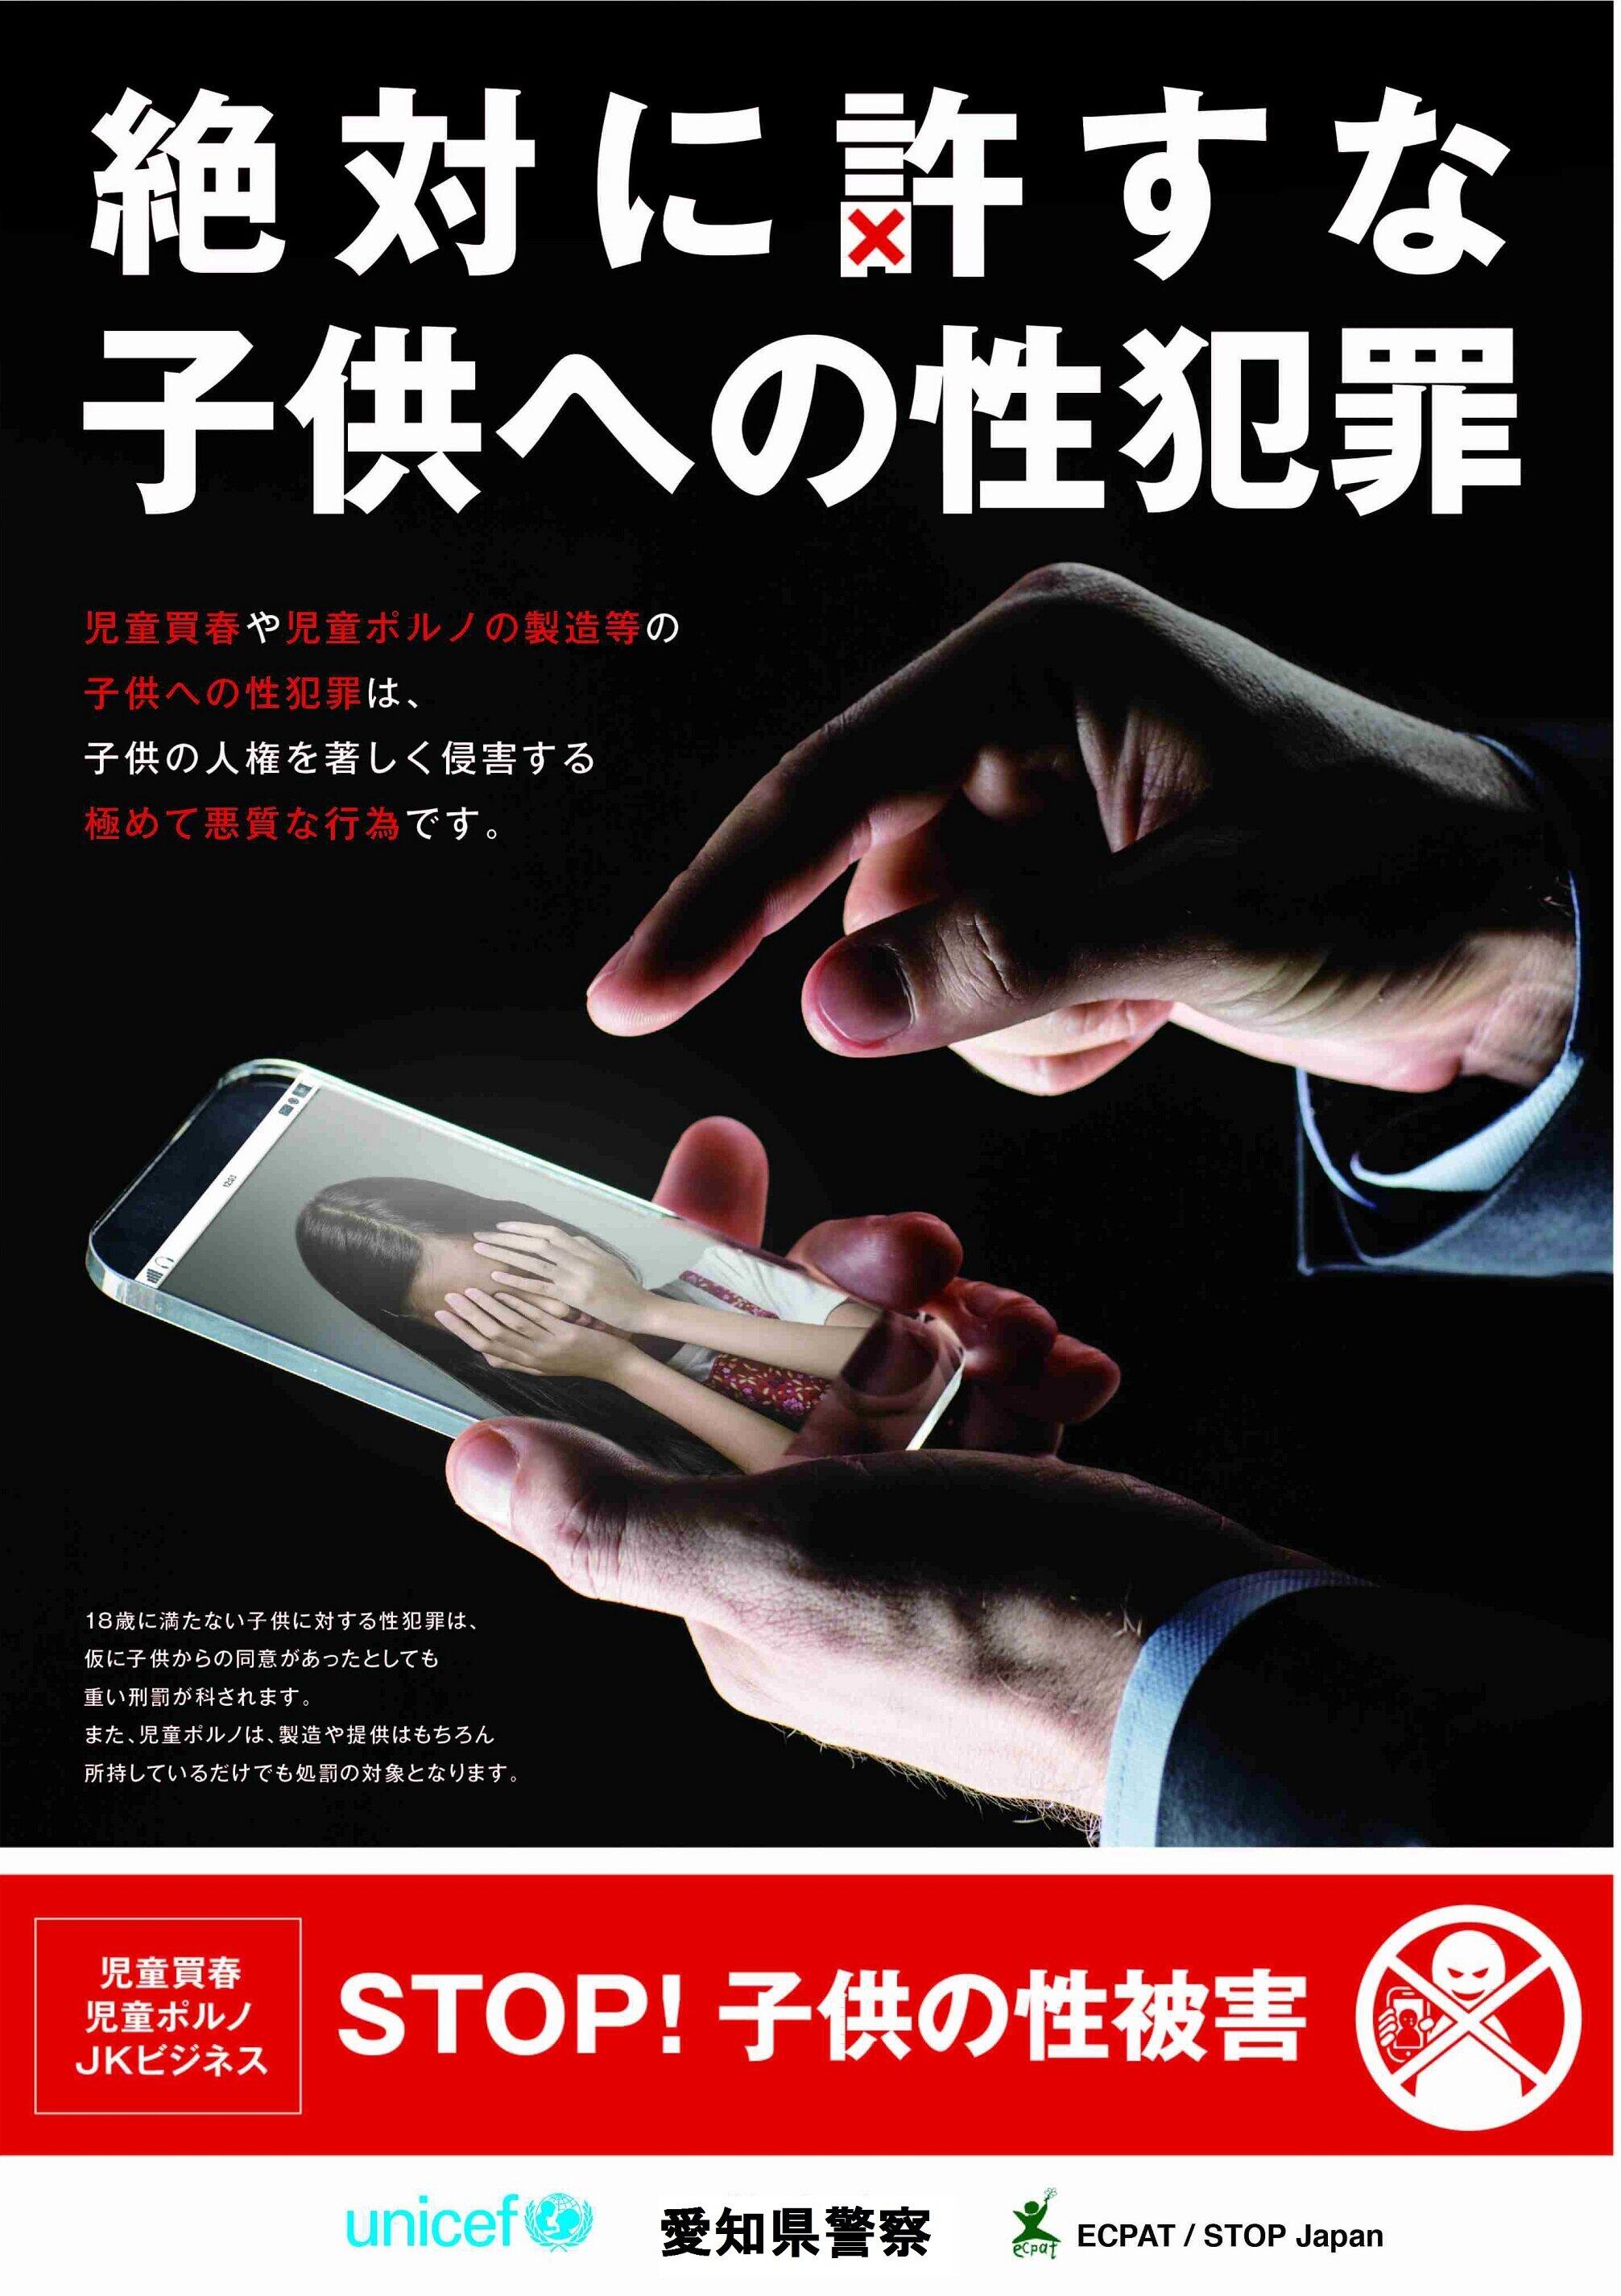 愛知県警が「パパ活」の相手を募るツイートなどへの警告メッセージに添付している画像（愛知県警提供）